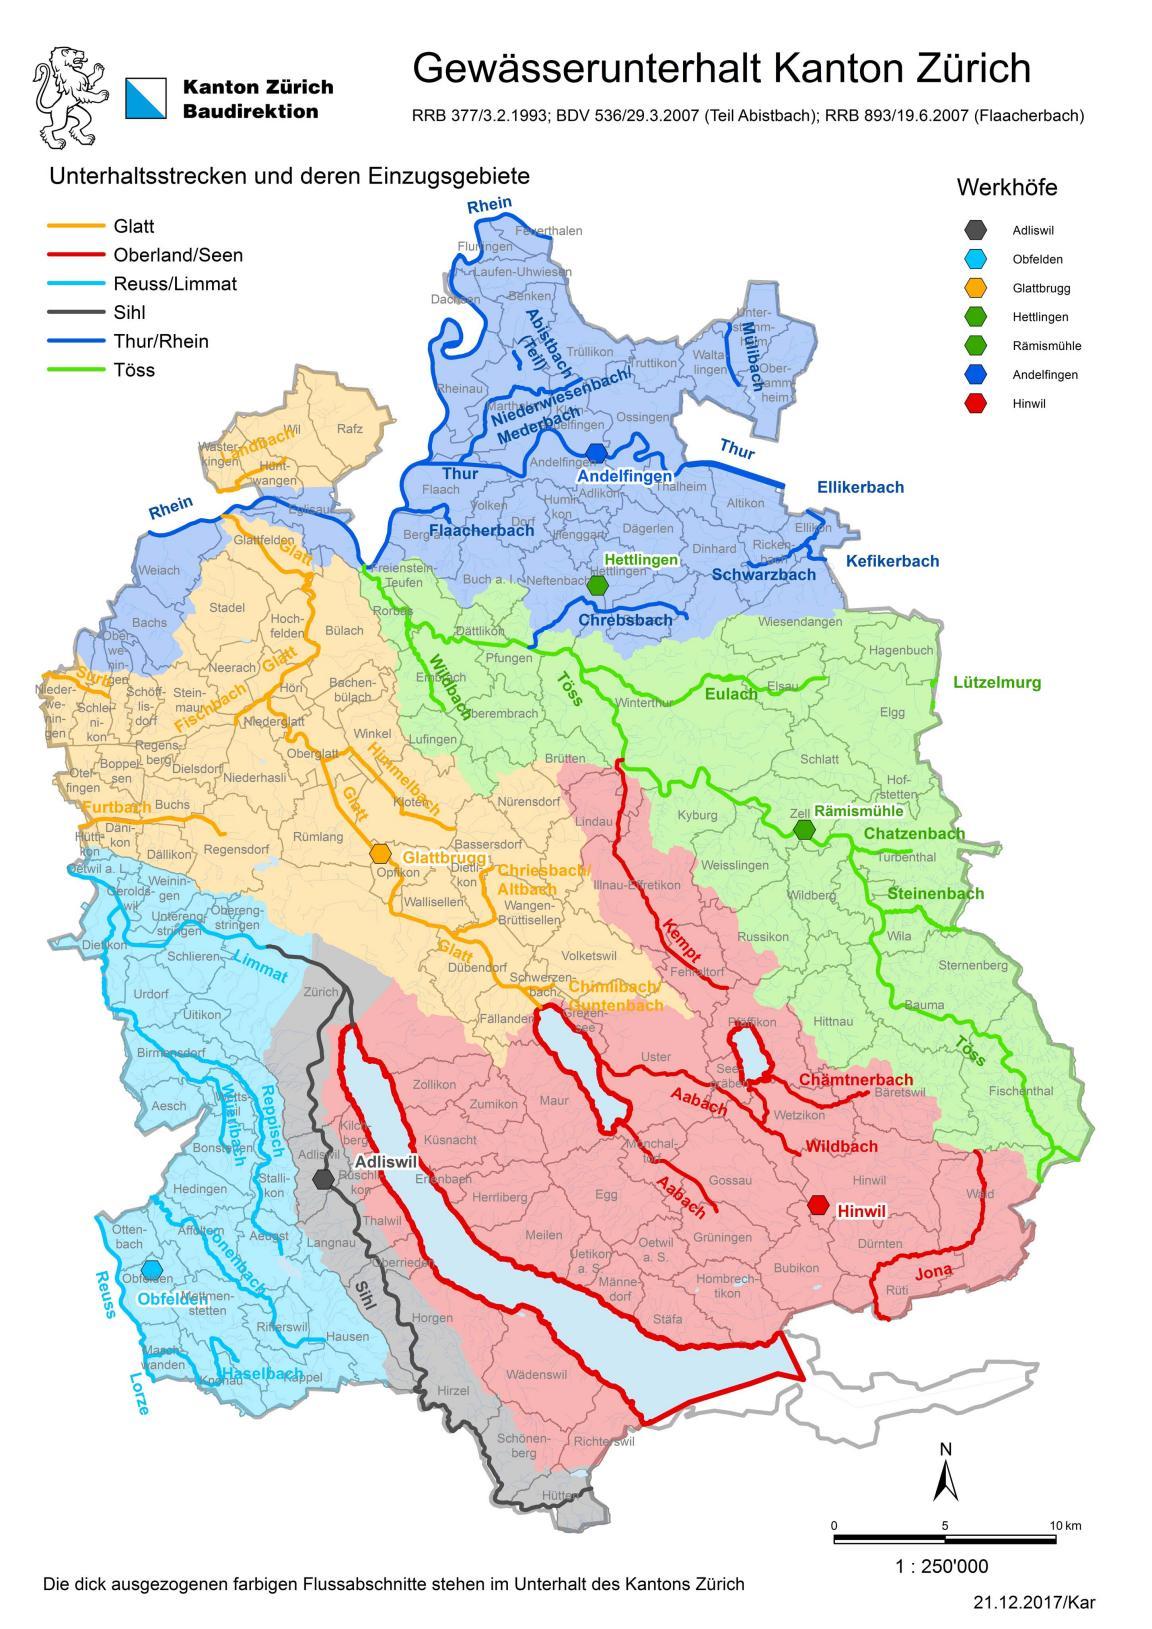 Die Karte zeigt die Gebietseinteilung des Gewässerunterhalts.